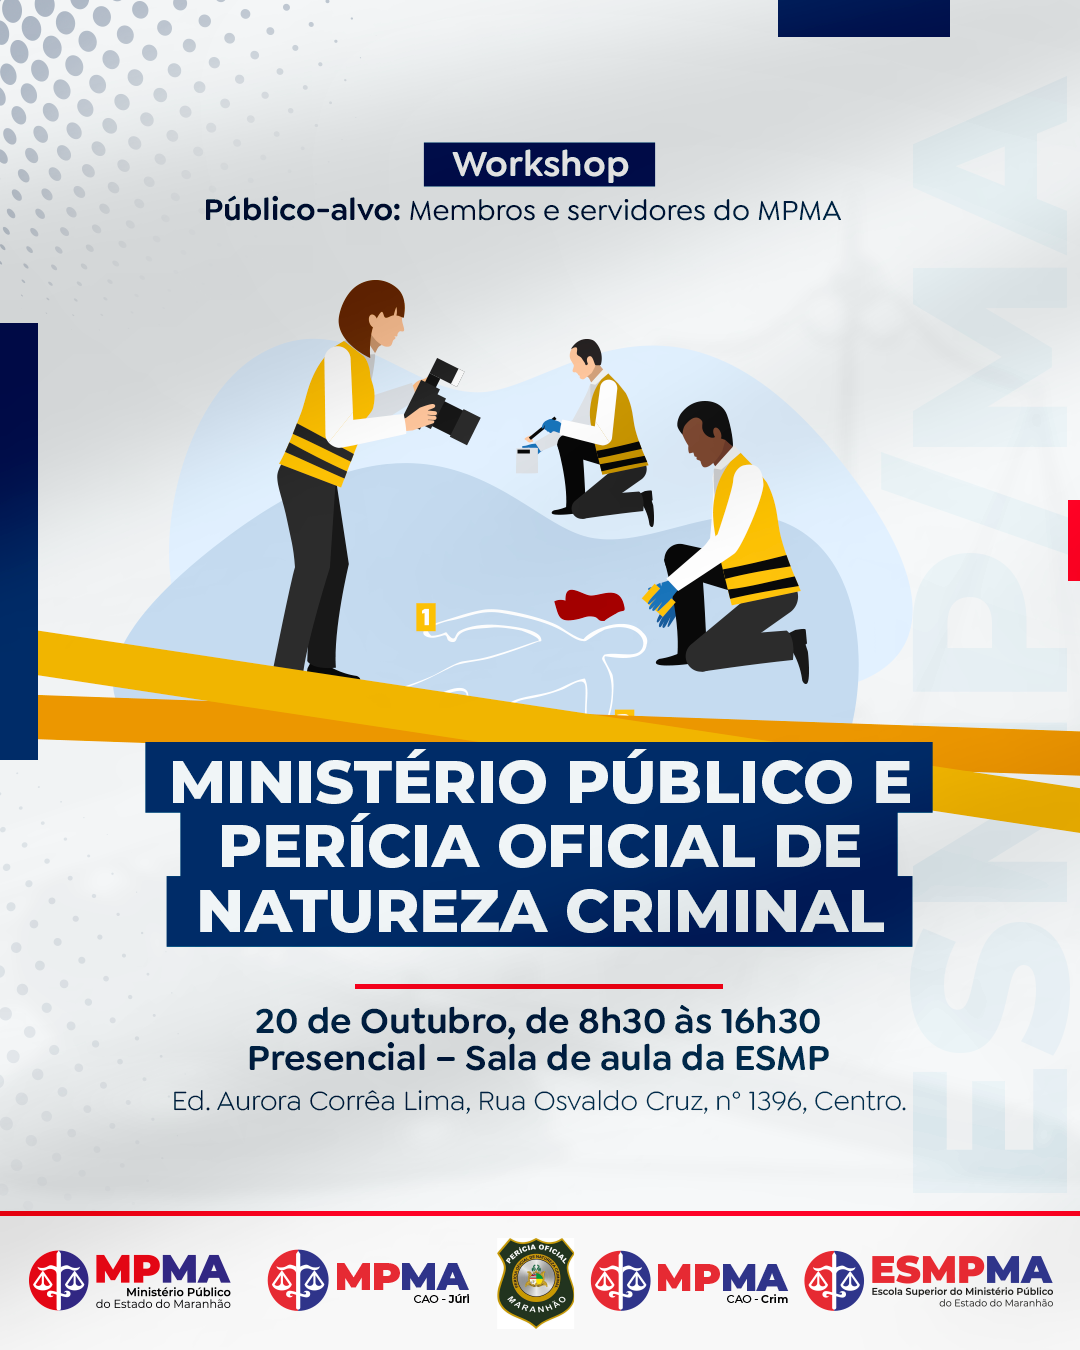 Workshop "Ministério Público e Perícia Oficial de Natureza Criminal"